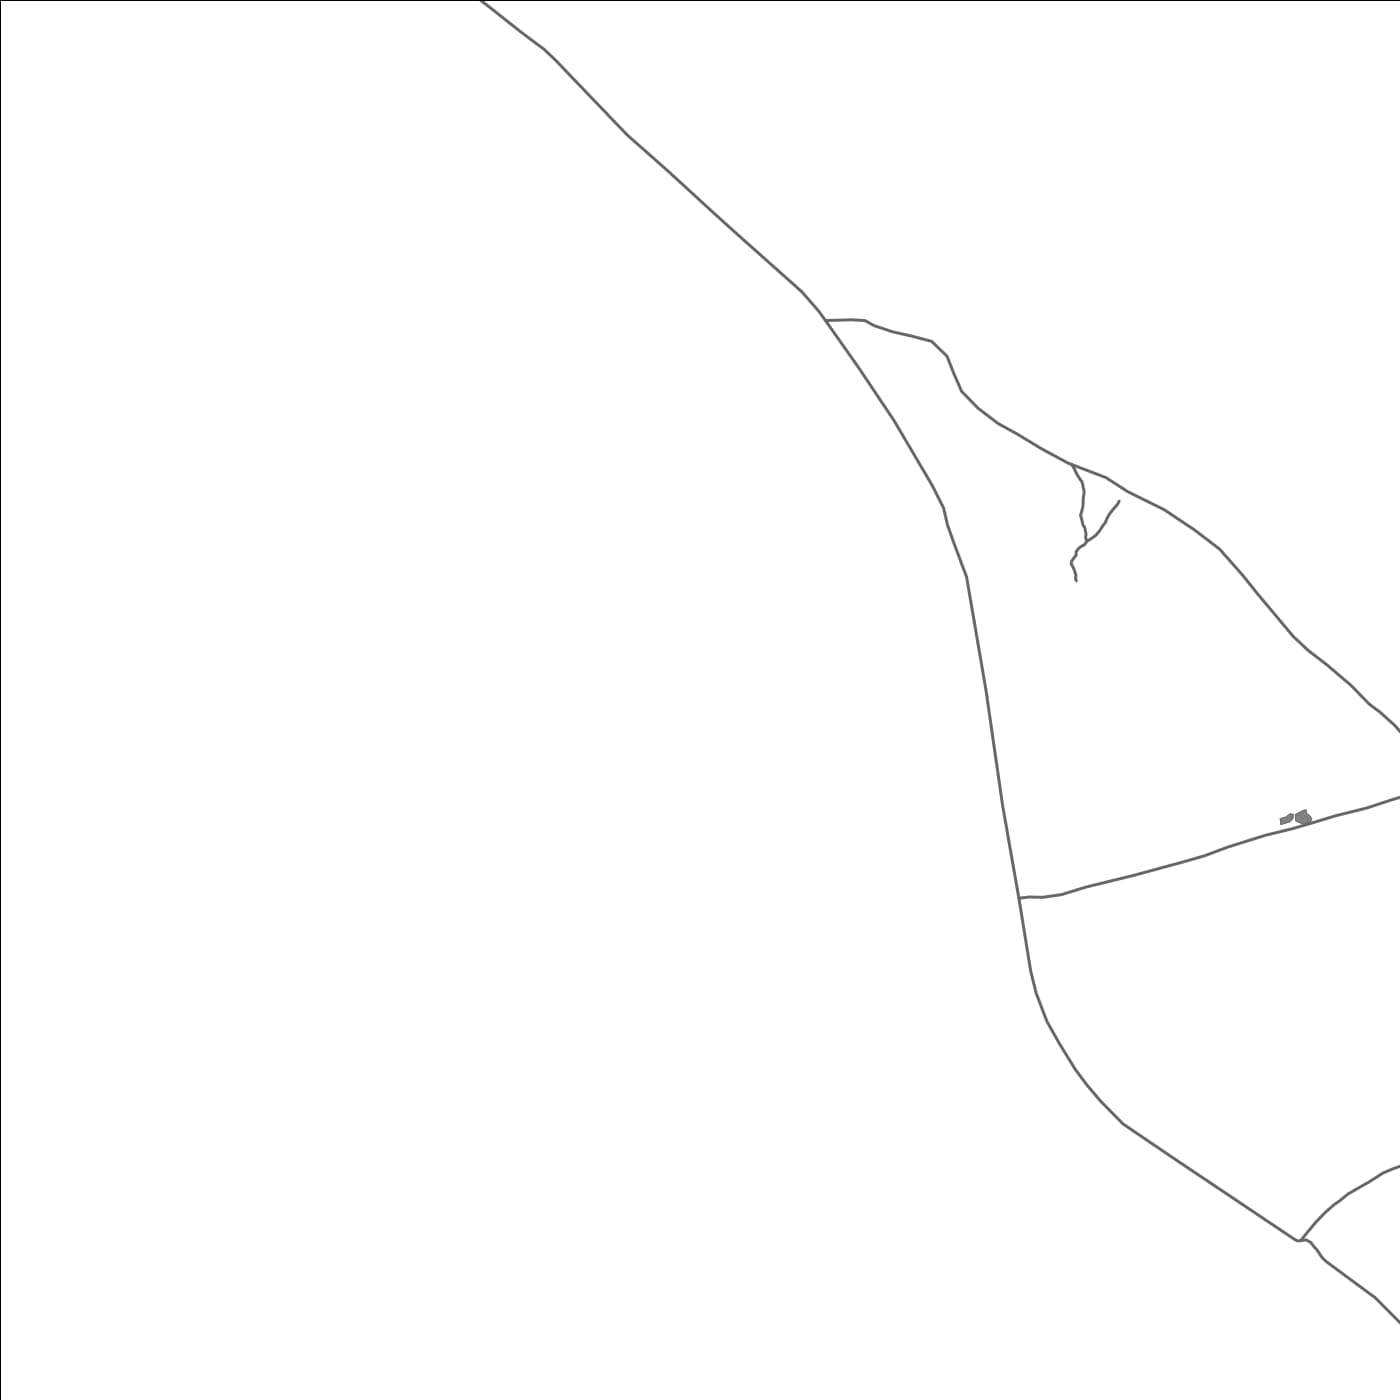 ROAD MAP OF NIKUMANU, KIRIBATI BY MAPBAKES